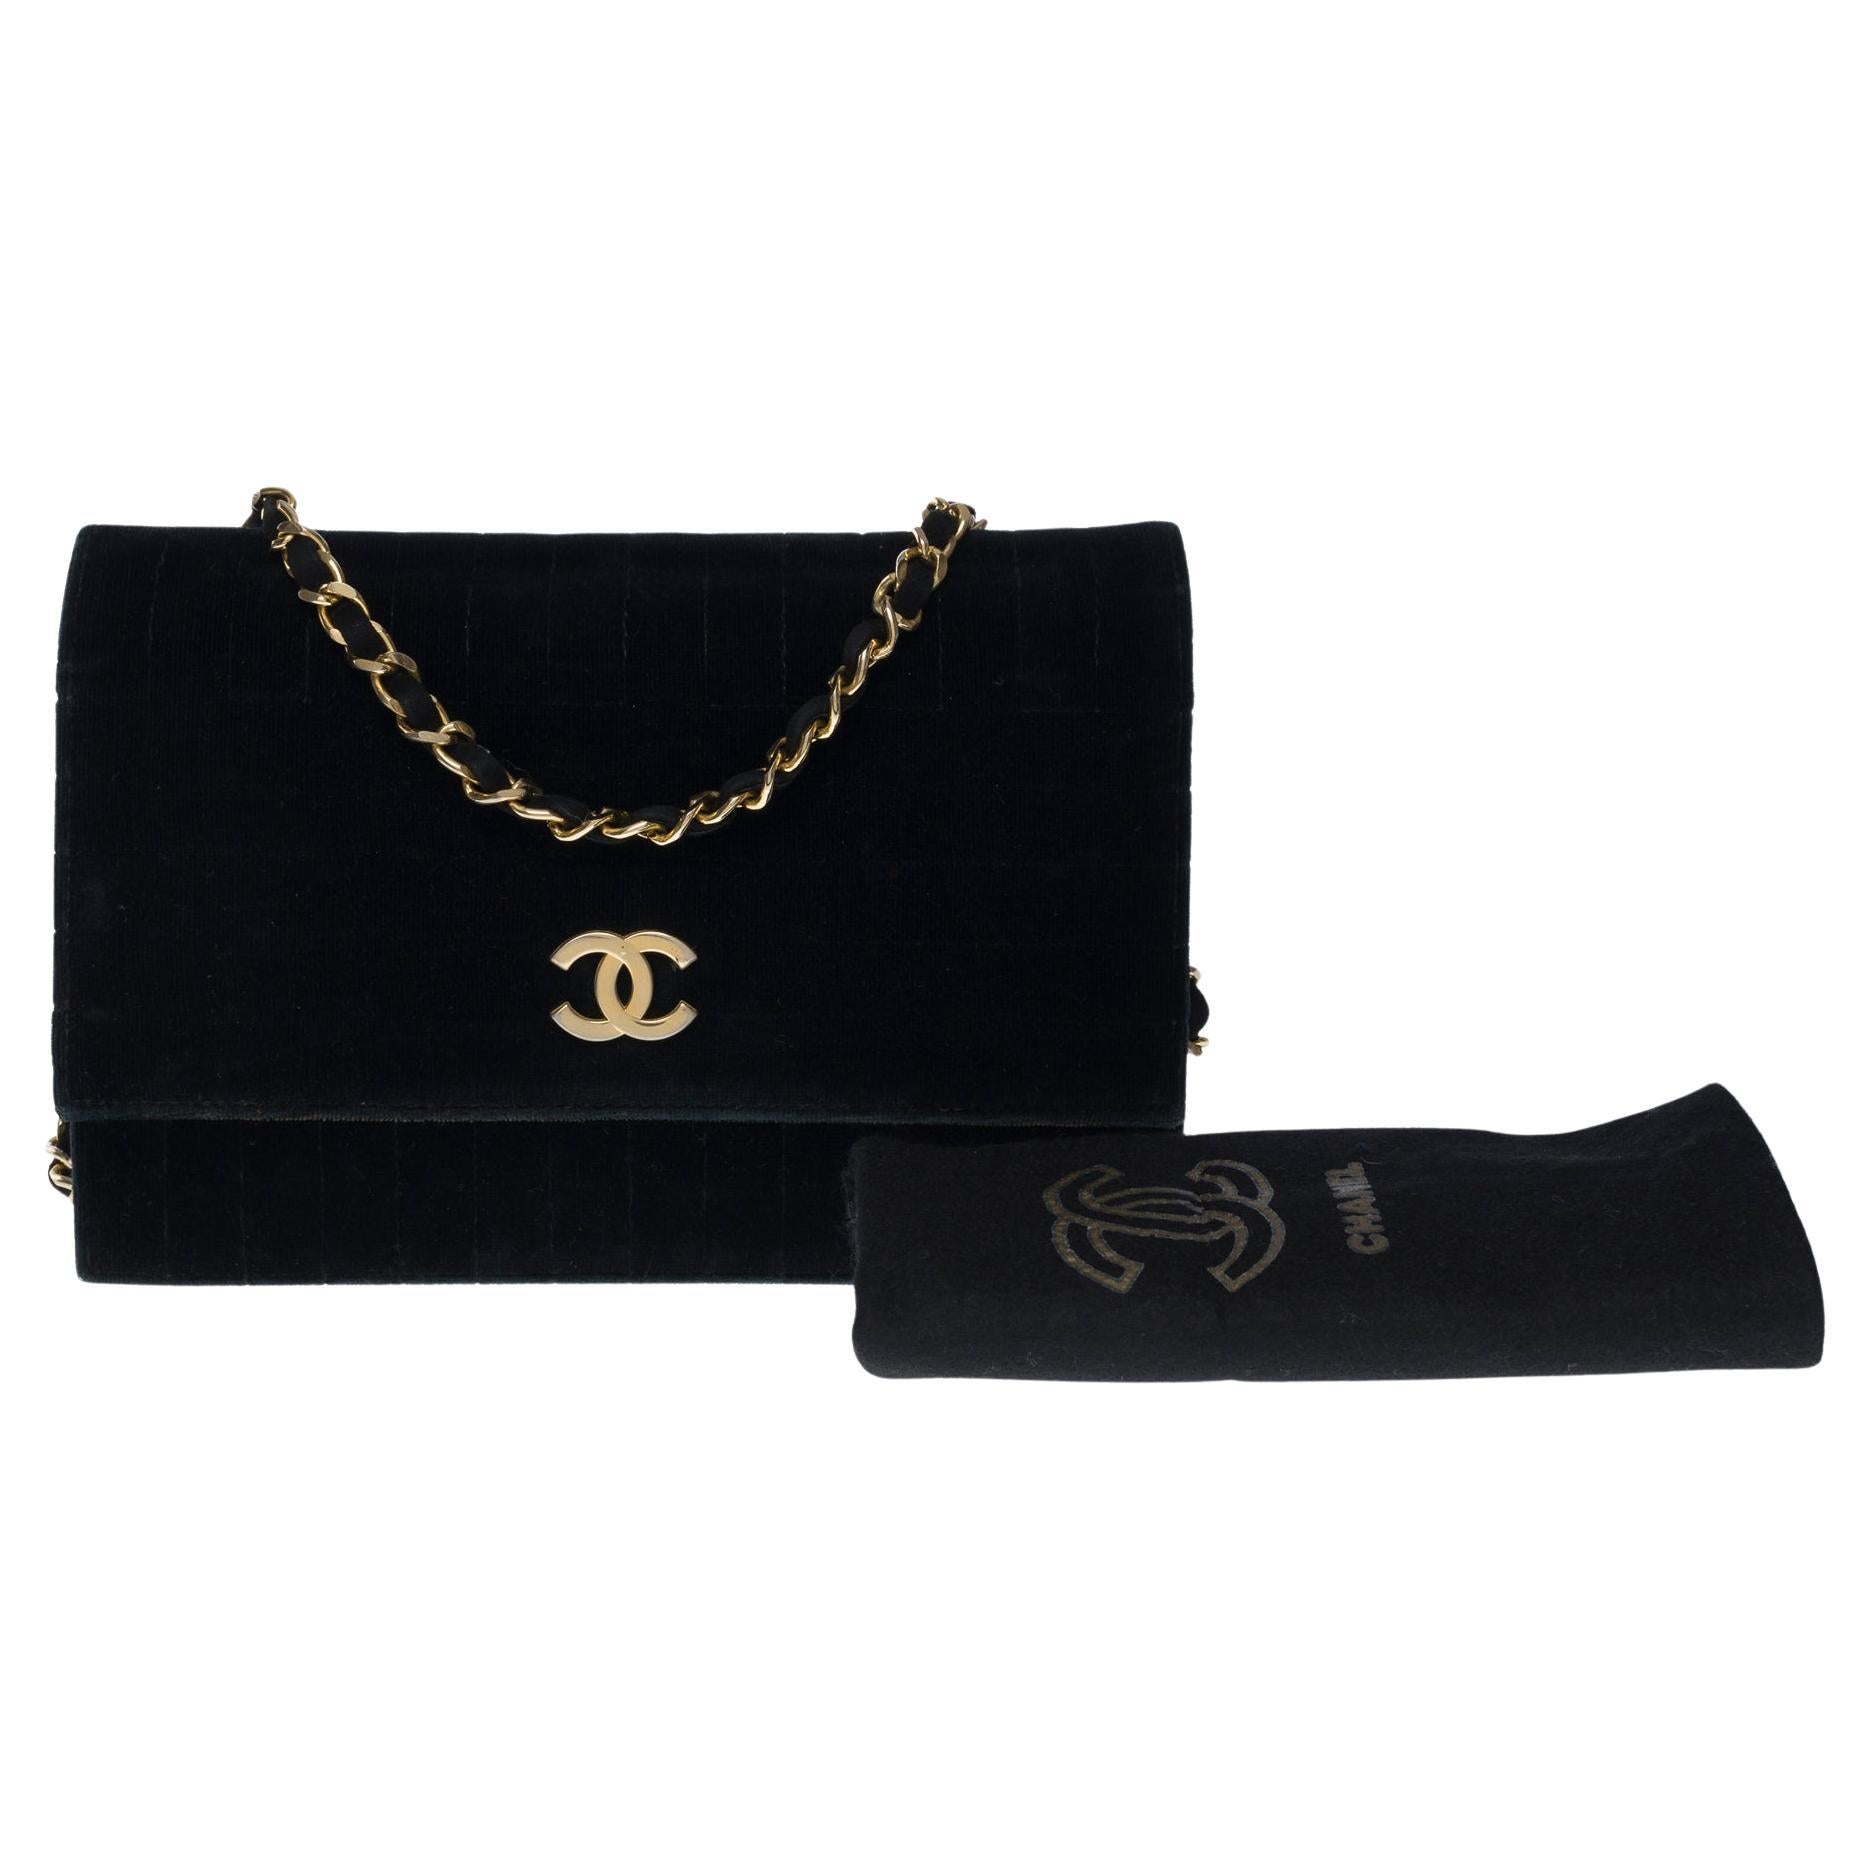 Rare Vintage Chanel Micro Mini Black Velvet Gold HW Flap Bag, 1stdibs.com